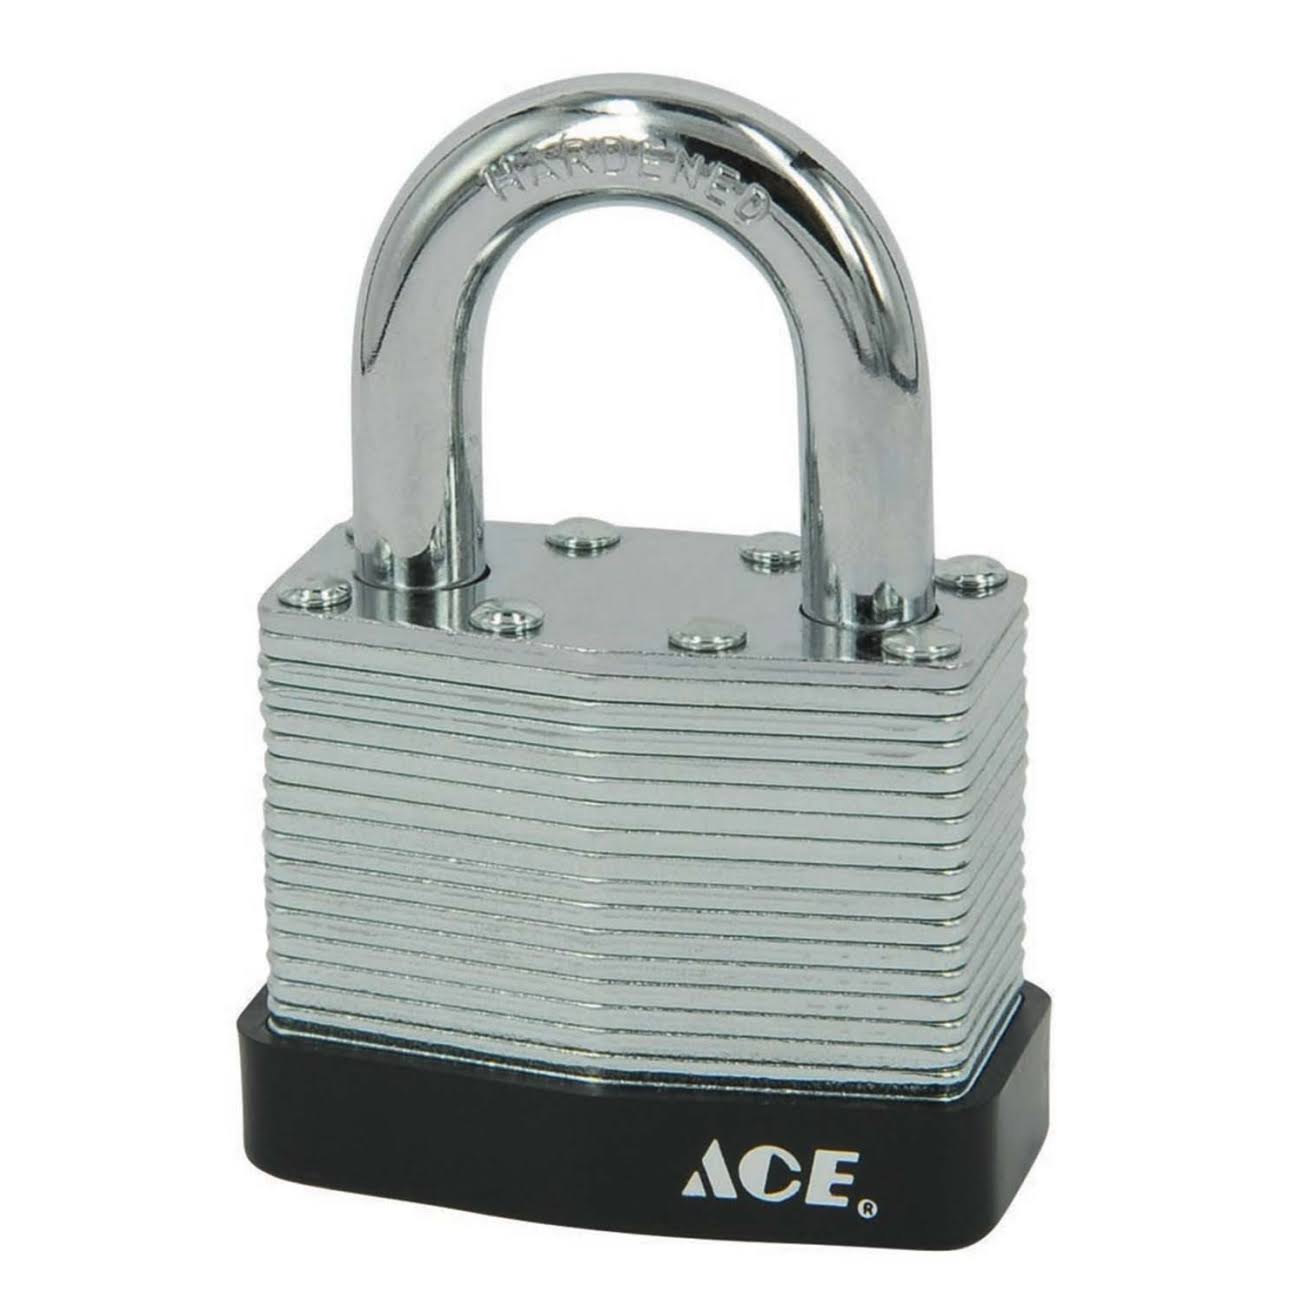 Ace Chrome Plated High Security Padlocks - 1 3/4"